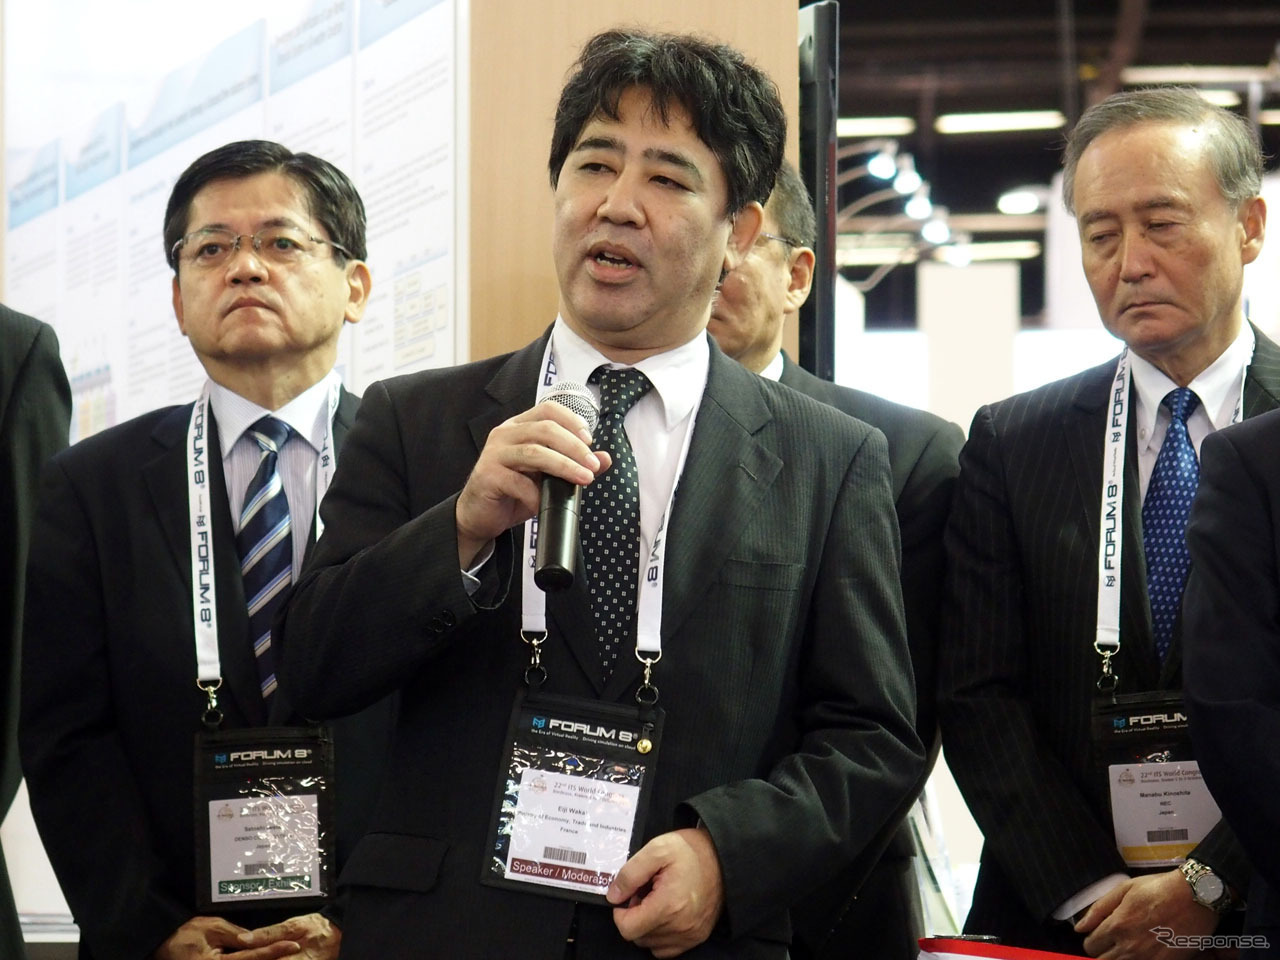 「4日間の会期中に日本のITS技術をアピールしていこう」と挨拶した経産省の若井英二審議官。